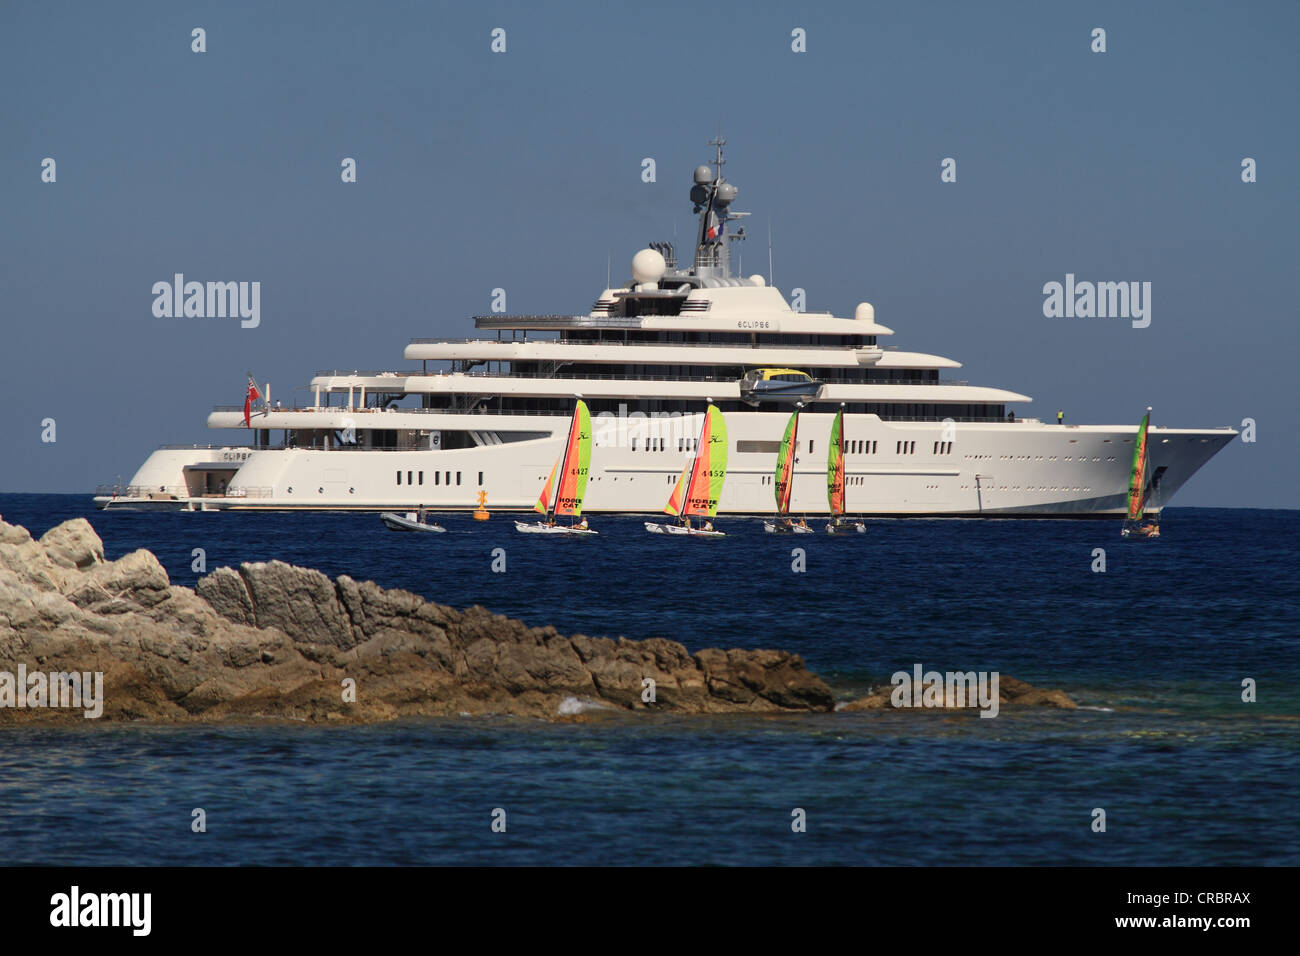 Luxury motor yacht eclissi, yacht più lungo al mondo, come del 2012, c 163m lungo, di proprietà di Roman Abramovitch, costruito dal cantiere navale Foto Stock